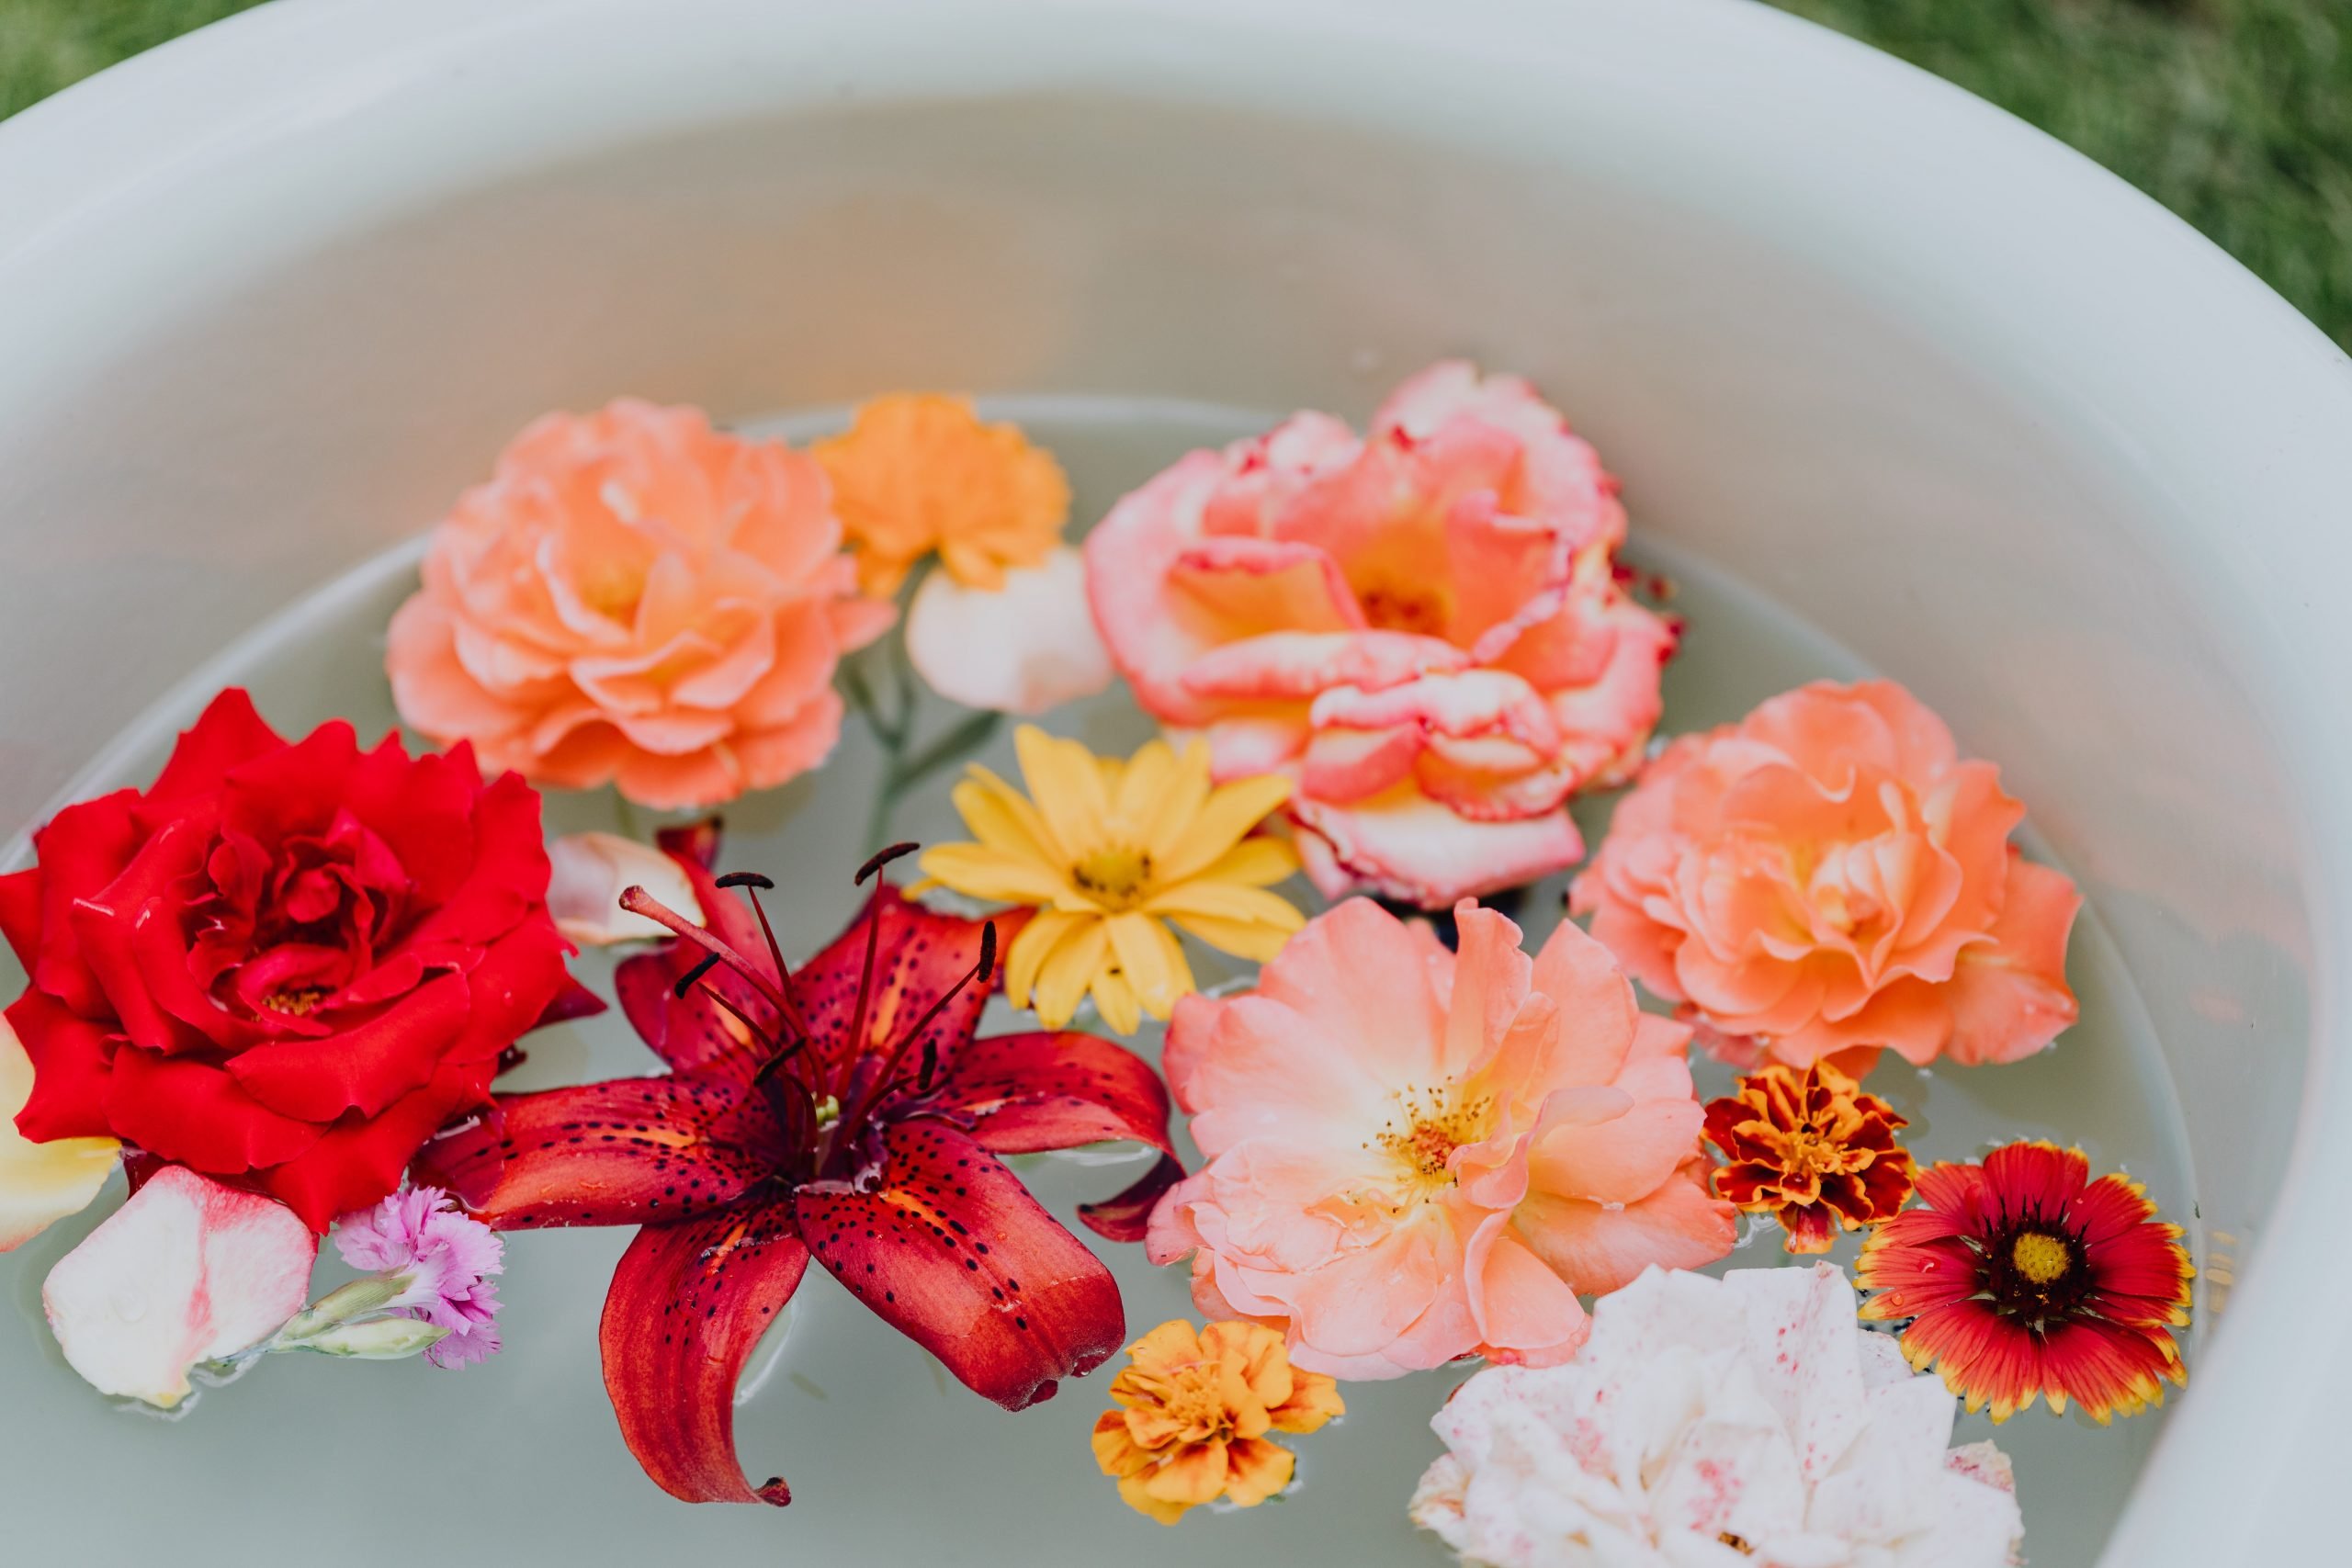 banheira com água e diversas flores coloridas